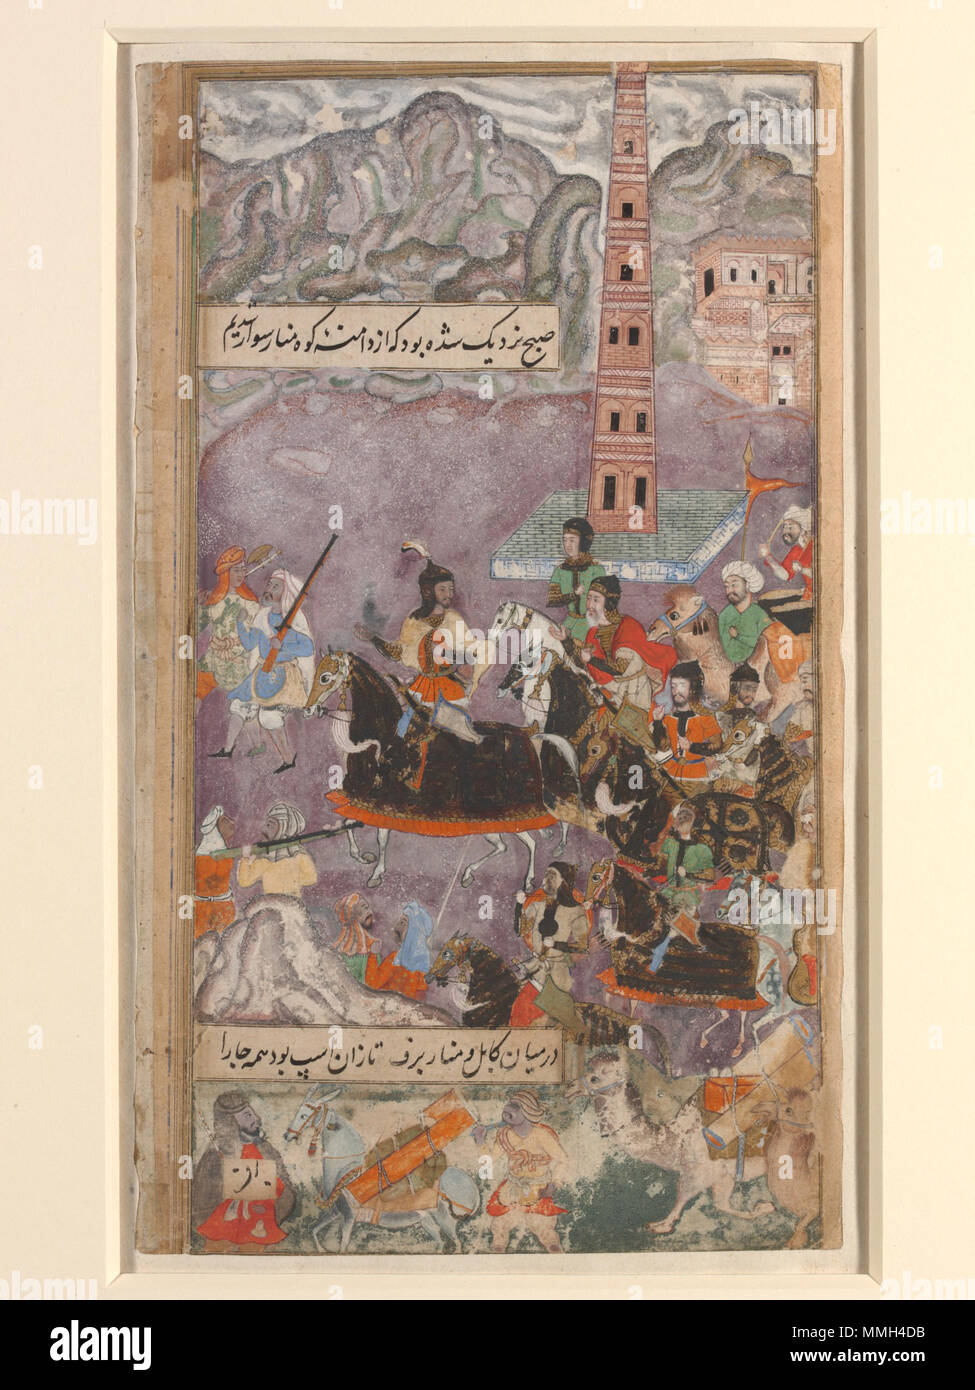 . Inglese: 'Memoirs di Babur' o Baburnama sono opera del grande-grande-pronipote di Timur (Tamerlane), Zahiruddin Muhammad Babur (1483-1530). Il Baburnama narra la storia di Prince la lotta prima di affermare e difendere la sua rivendicazione al trono di Samarcanda e la regione della Valle di Fergana. Dopo essere stato cacciato di Samarcanda nel 1501 dall'Uzbek Shaibanids, ha in ultima analisi ha cercato pascoli più ecologici, prima a Kabul e poi in India del nord, dove i suoi discendenti sono stati i con dossi (di Mughal) dynasty pregiudiziale a Delhi fino al 1858. Le miniature sono da una copia illustrata del Bab Foto Stock